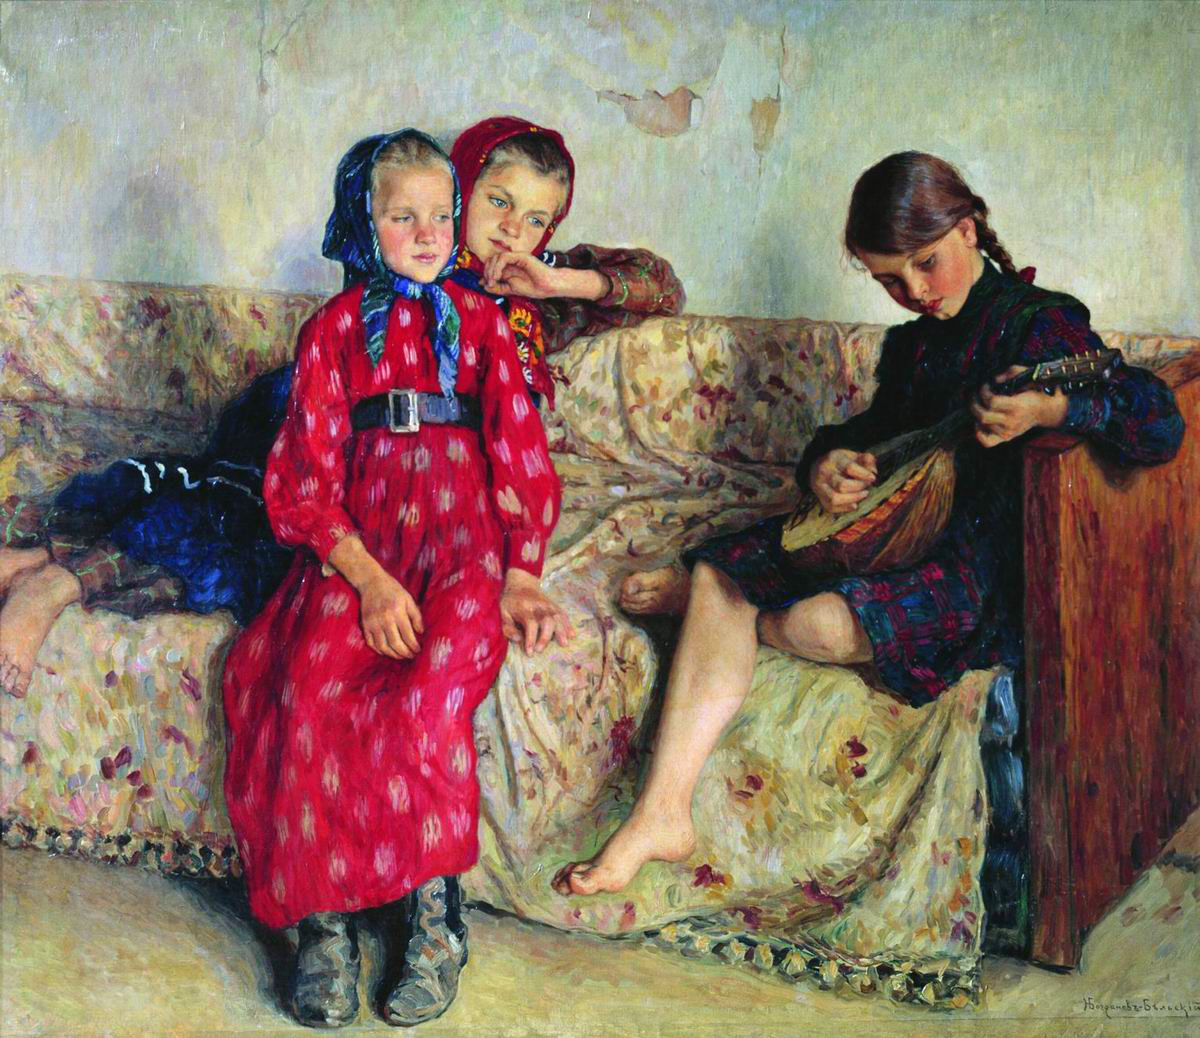 Богданов-Бельский. Деревенские друзья. 1912-1913